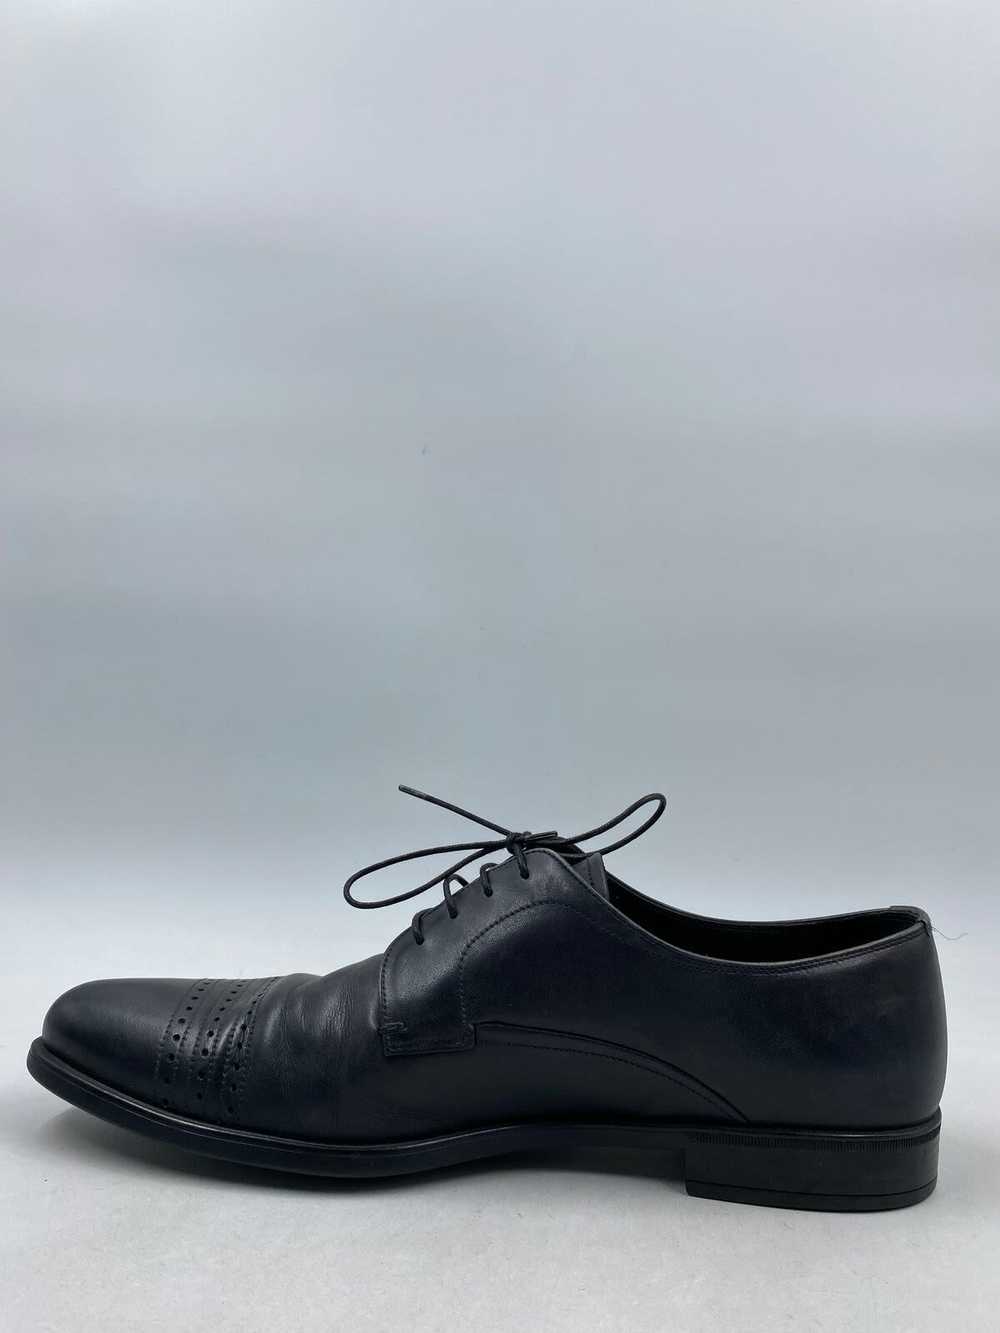 Prada Black Loafer Dress Shoe Men 8 - image 3